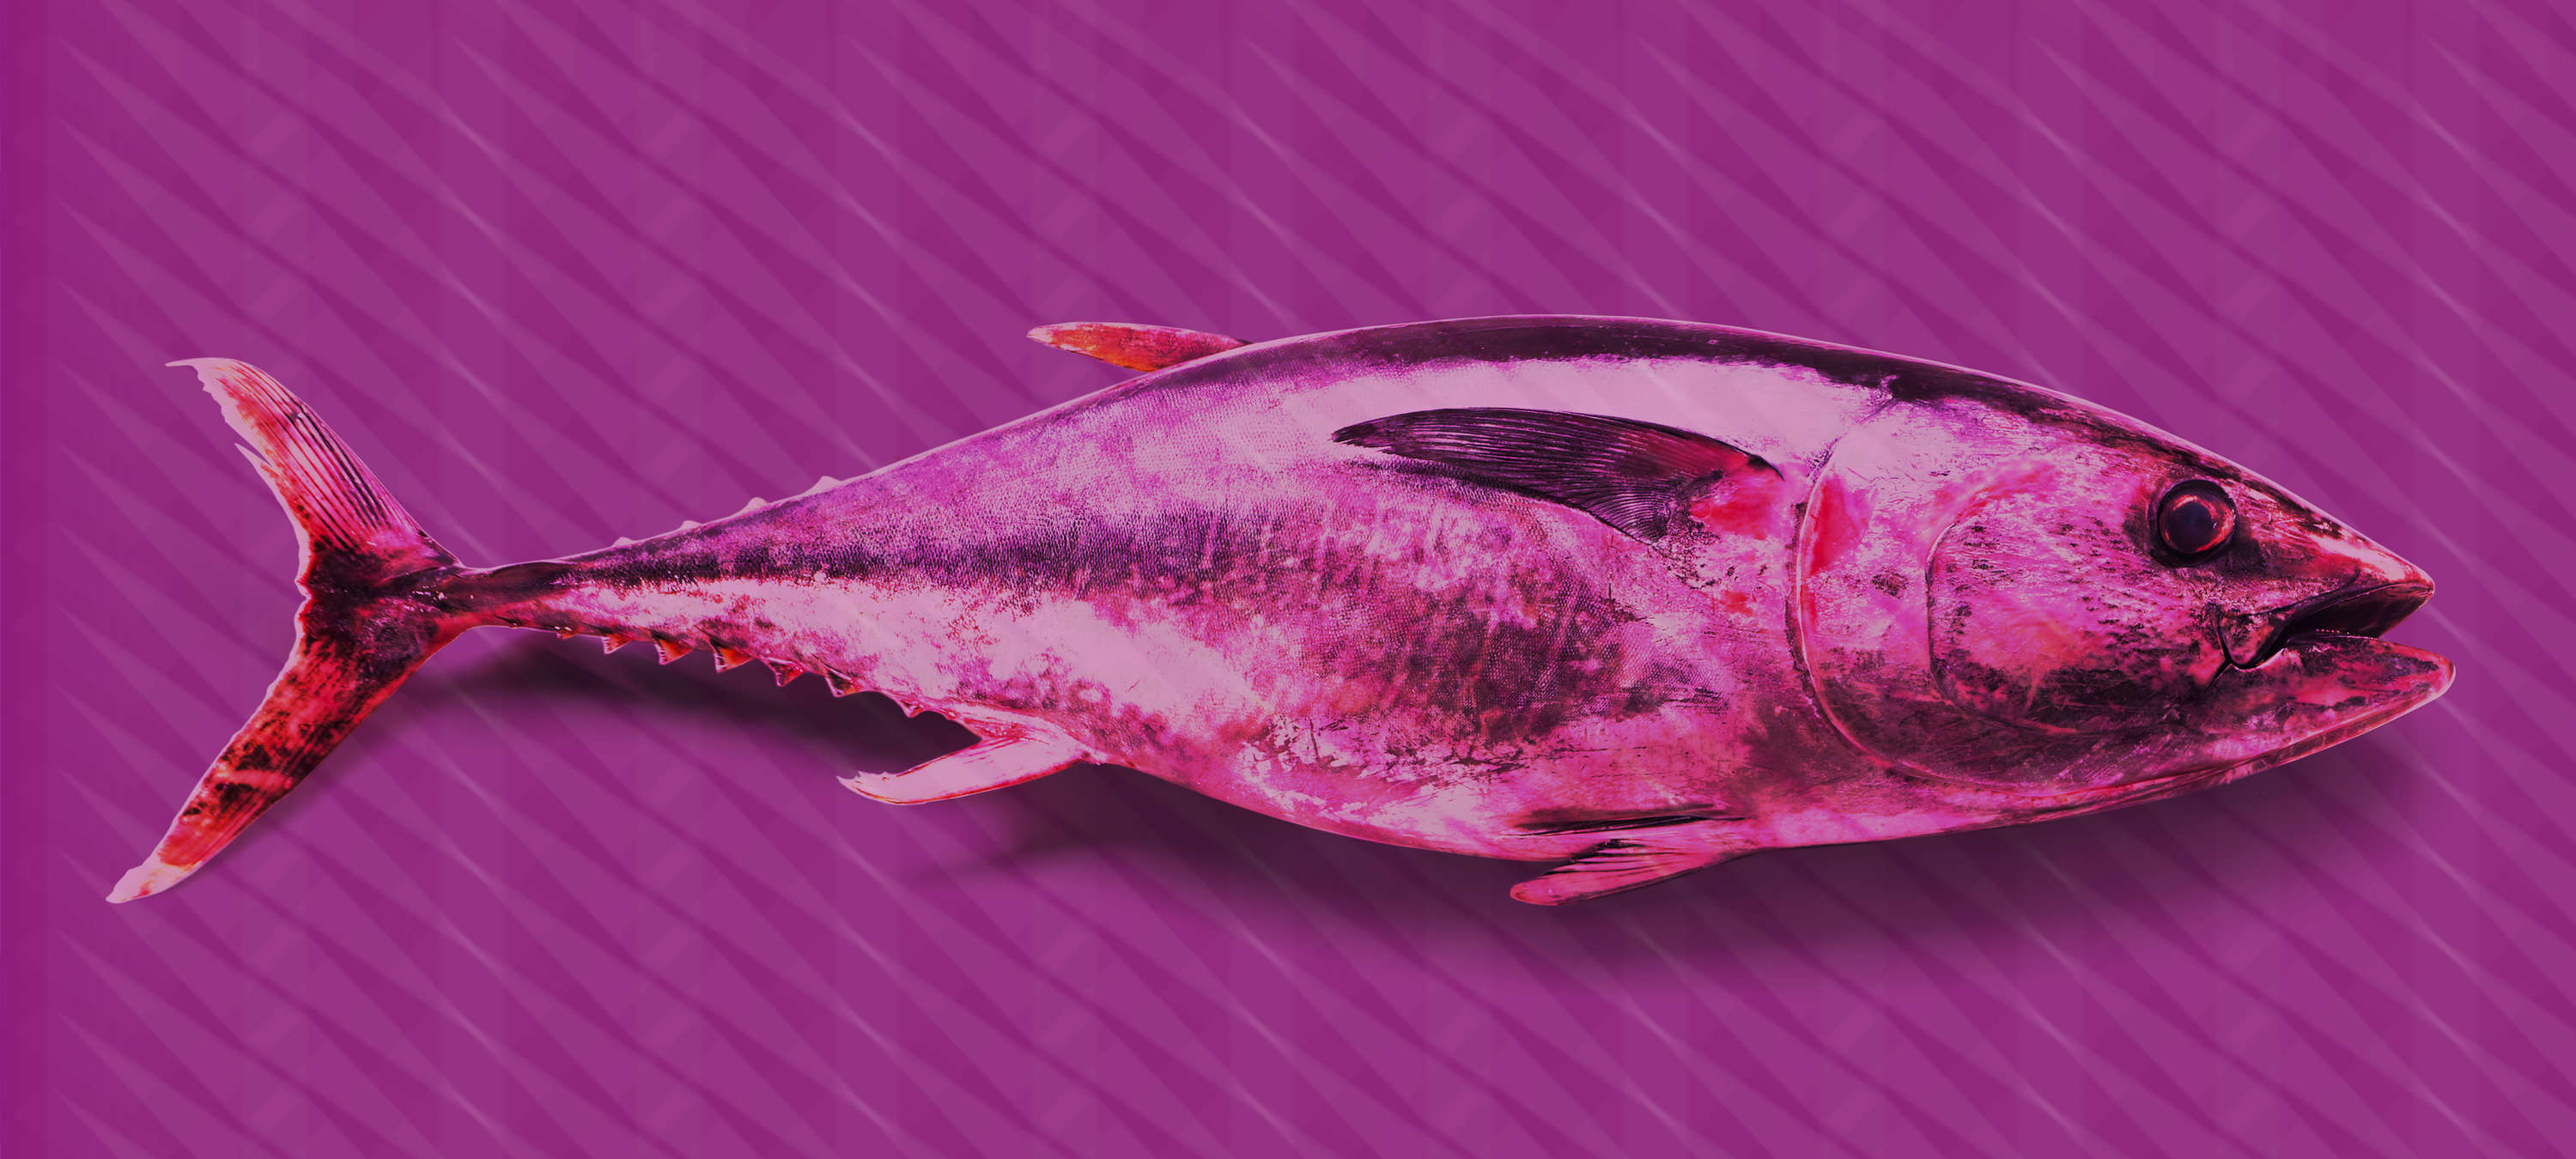             Papel pintable Atún estilo Pop Art - Violeta, Rosa, Rojo - Liso mate
        